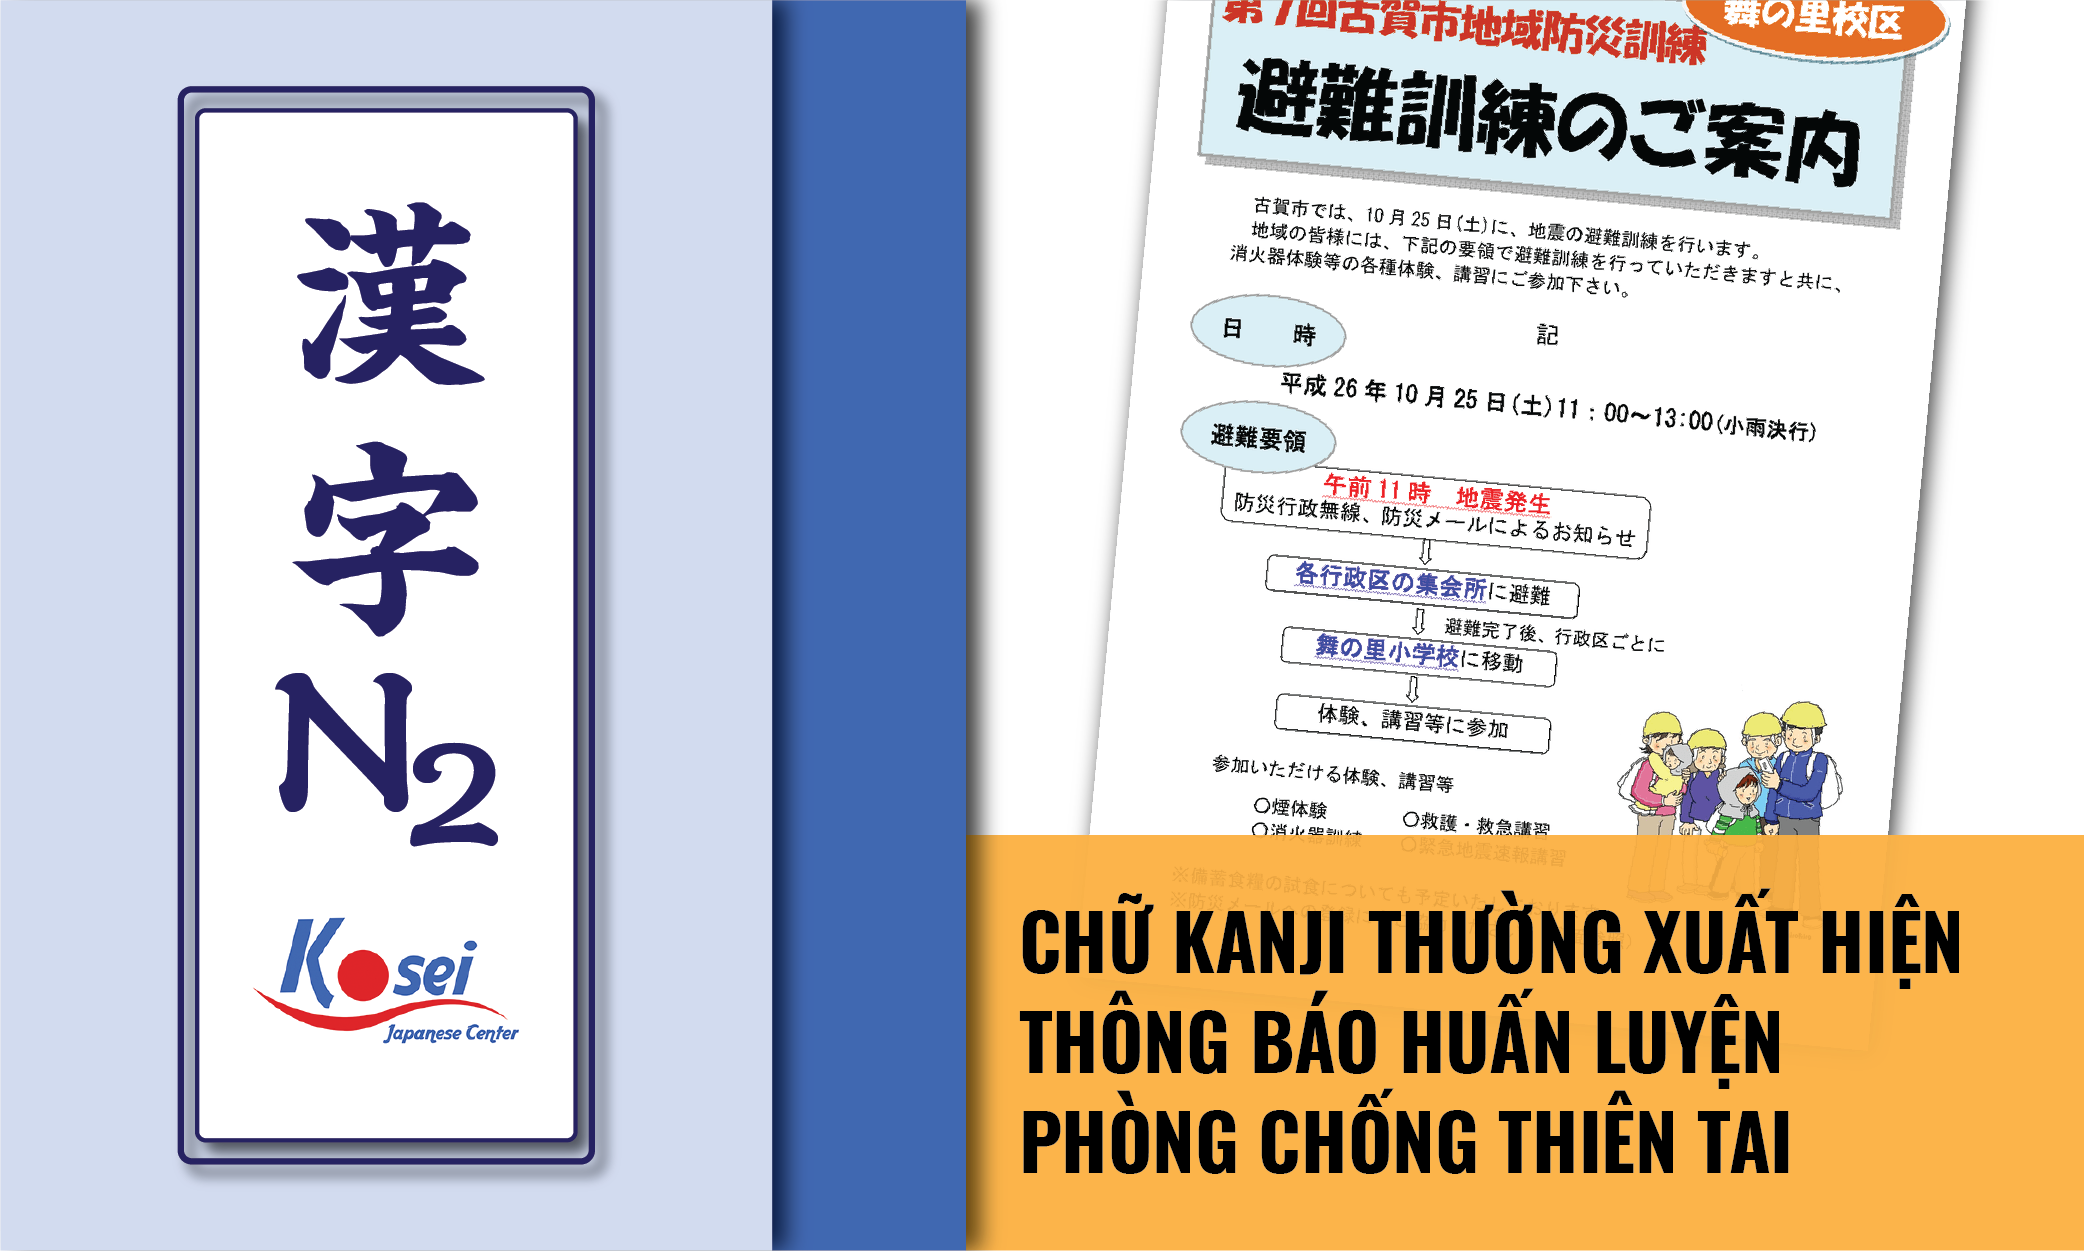 những kanji thường xuất hiện trên chỉ dẫn thông báo